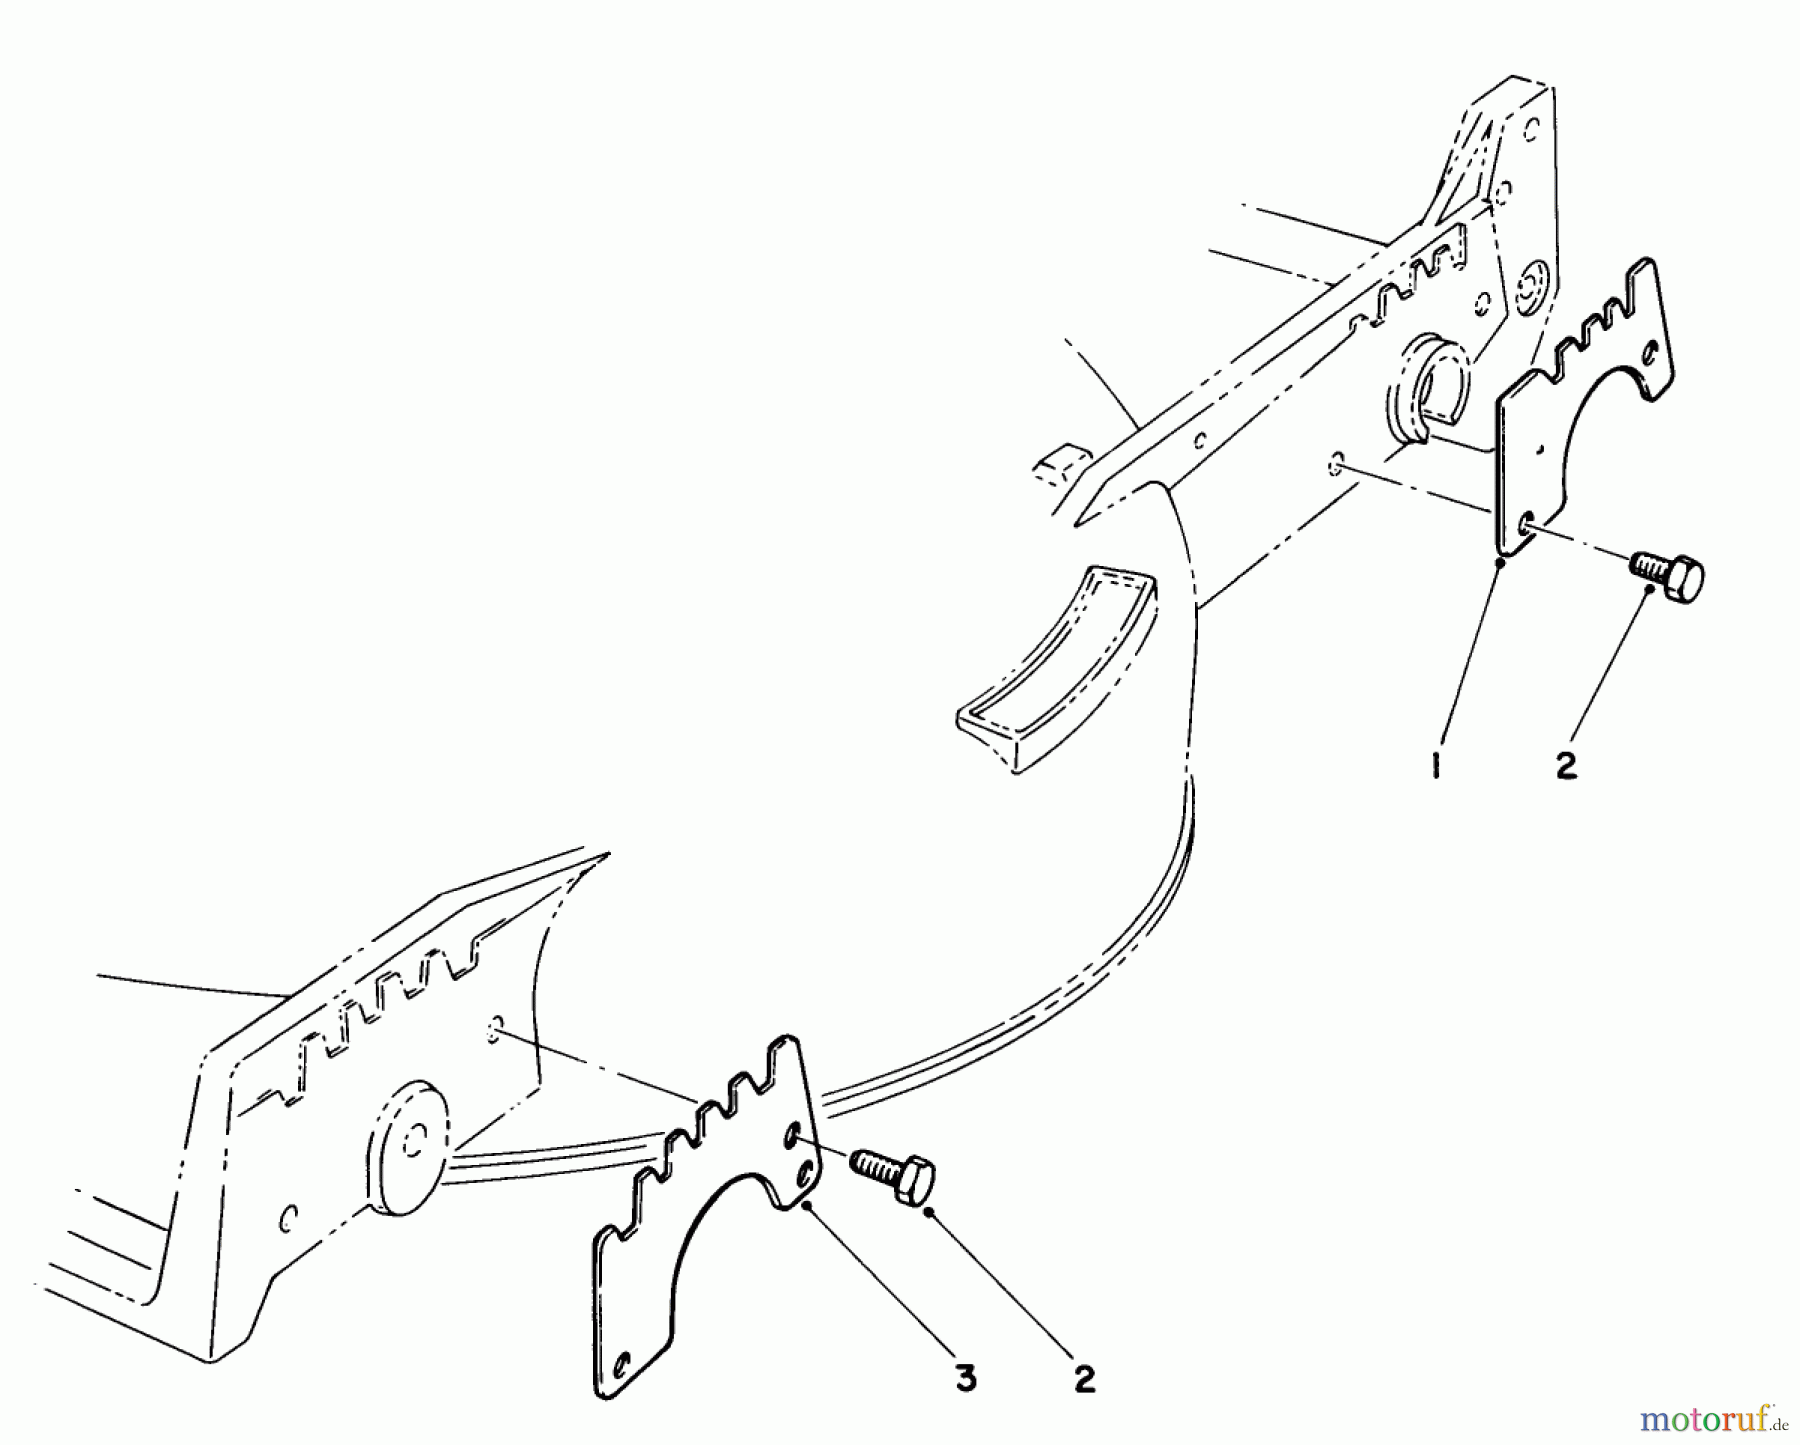  Toro Neu Mowers, Walk-Behind Seite 1 20718C - Toro Lawnmower, 1985 (5000001-5999999) WEAR PLATE KIT NO. 49-4080 (OPTIONAL)